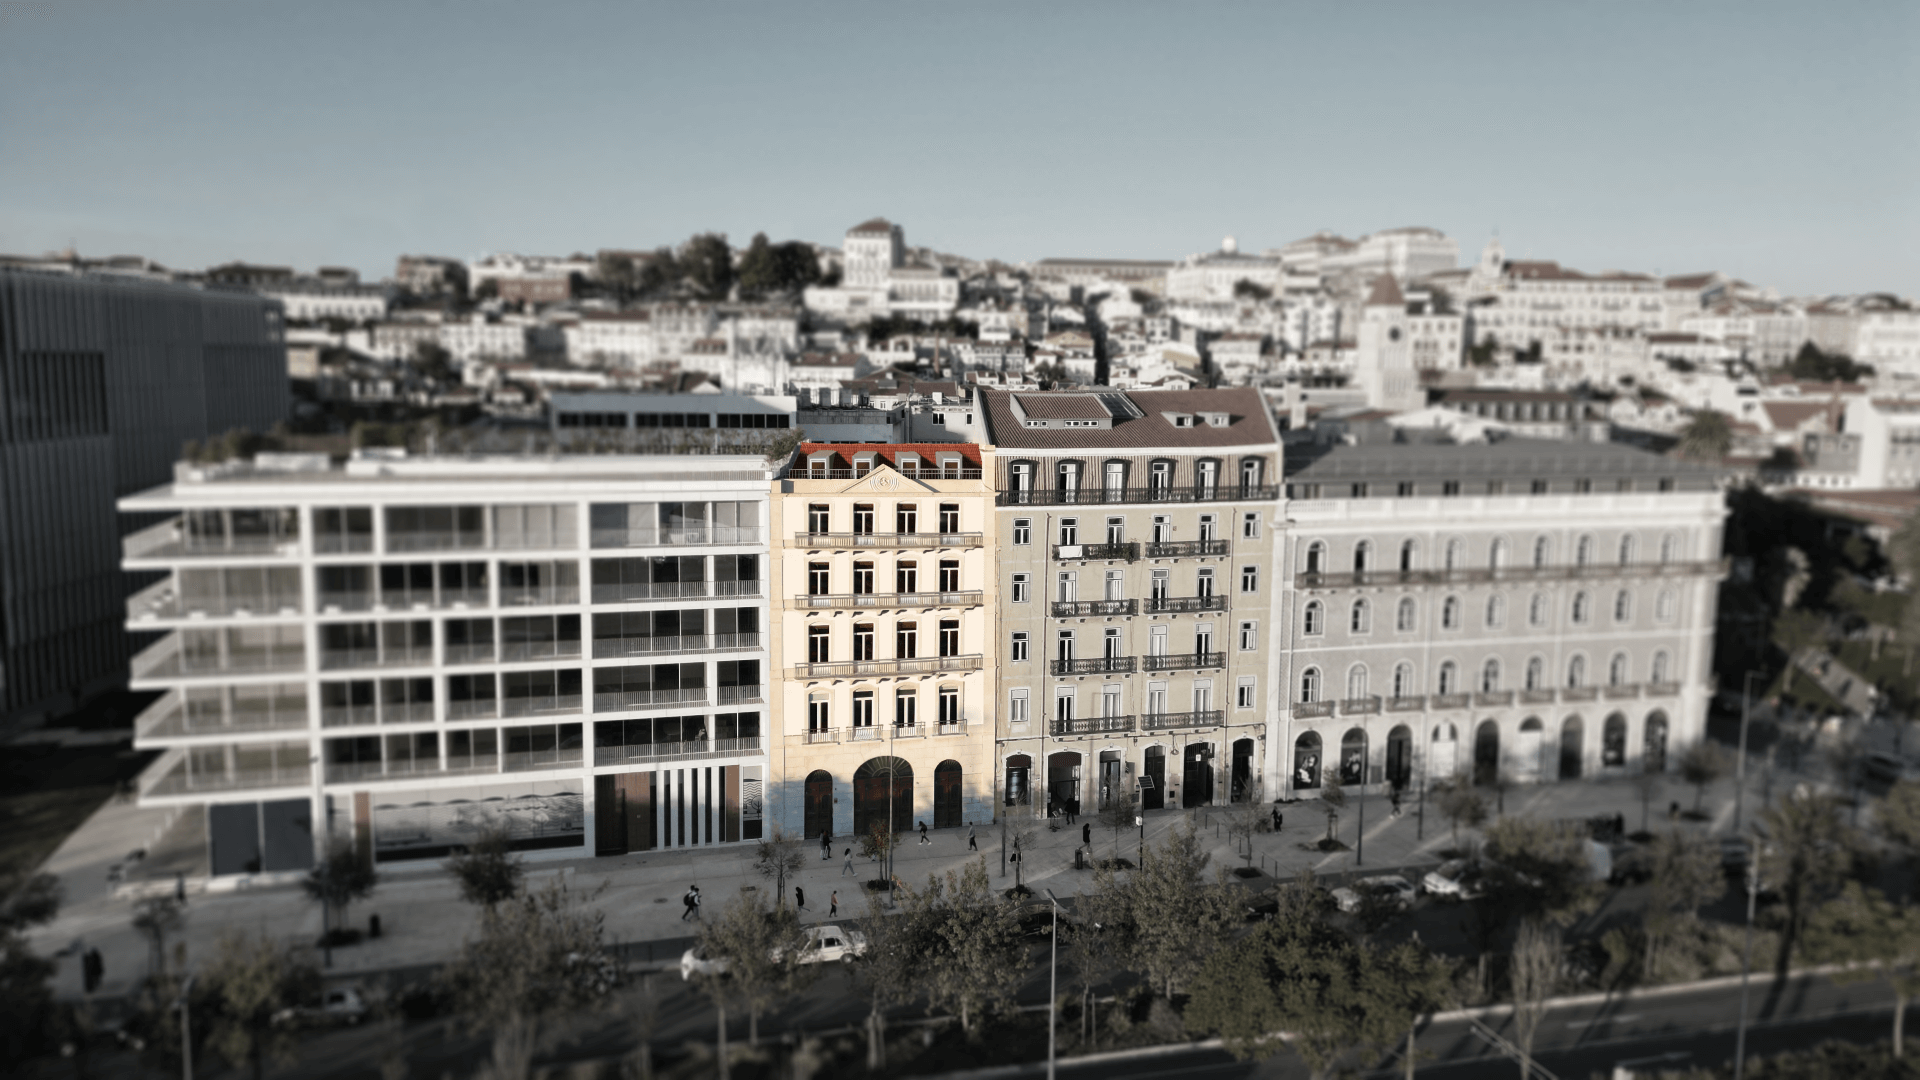 Portugal Golden Visa - Building Concept Image 2 Large